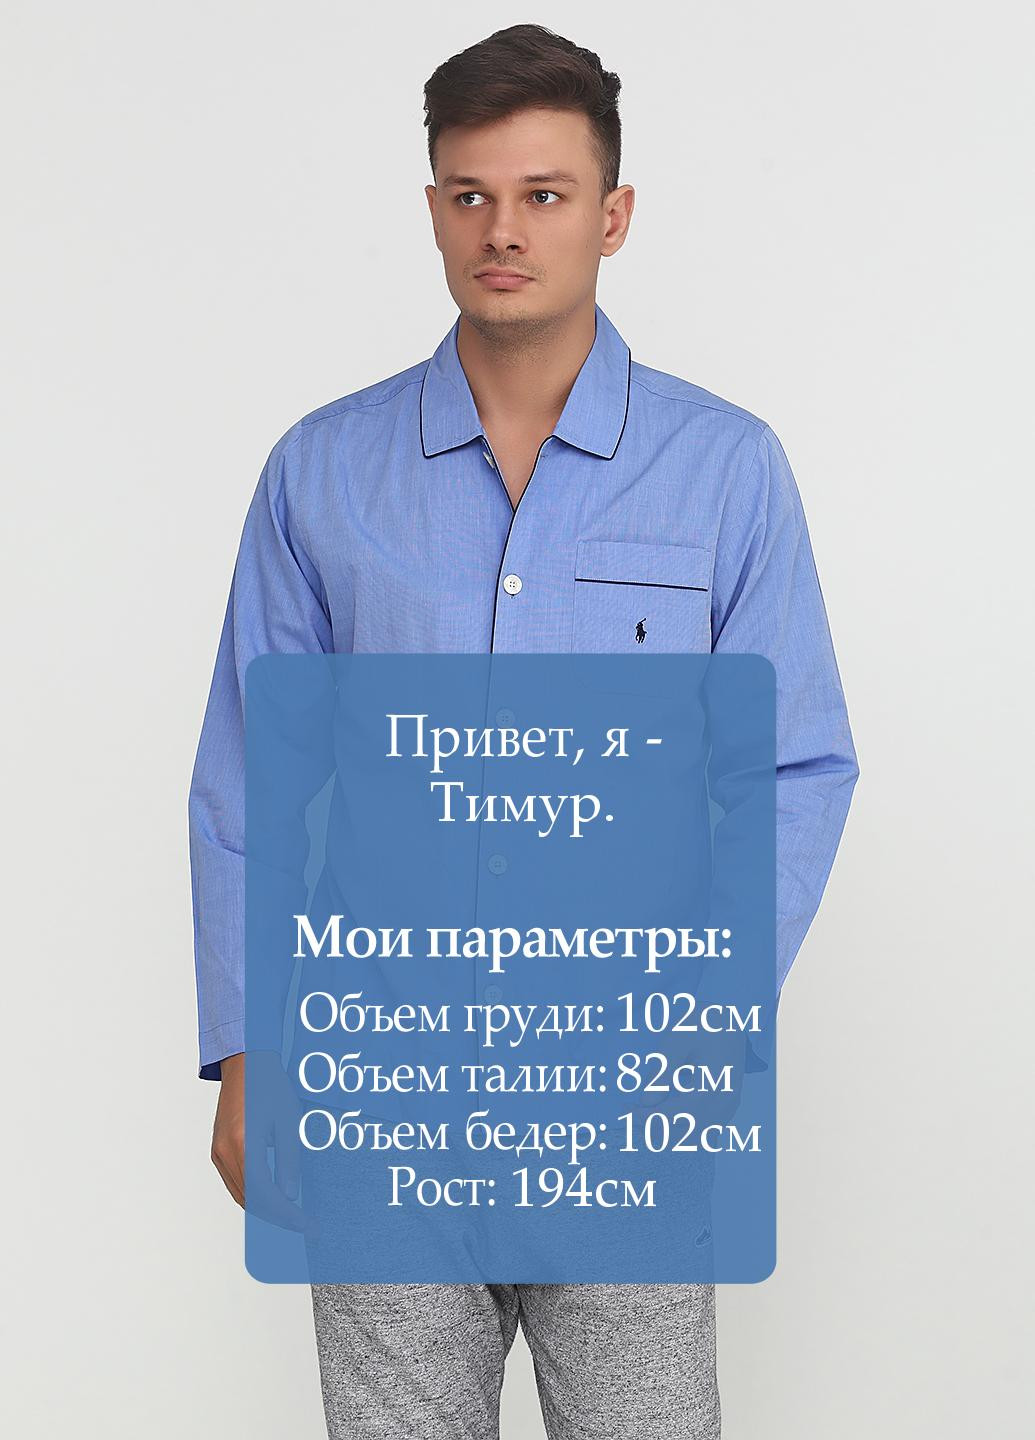 Голубой домашний рубашка перец с солью Ralph Lauren